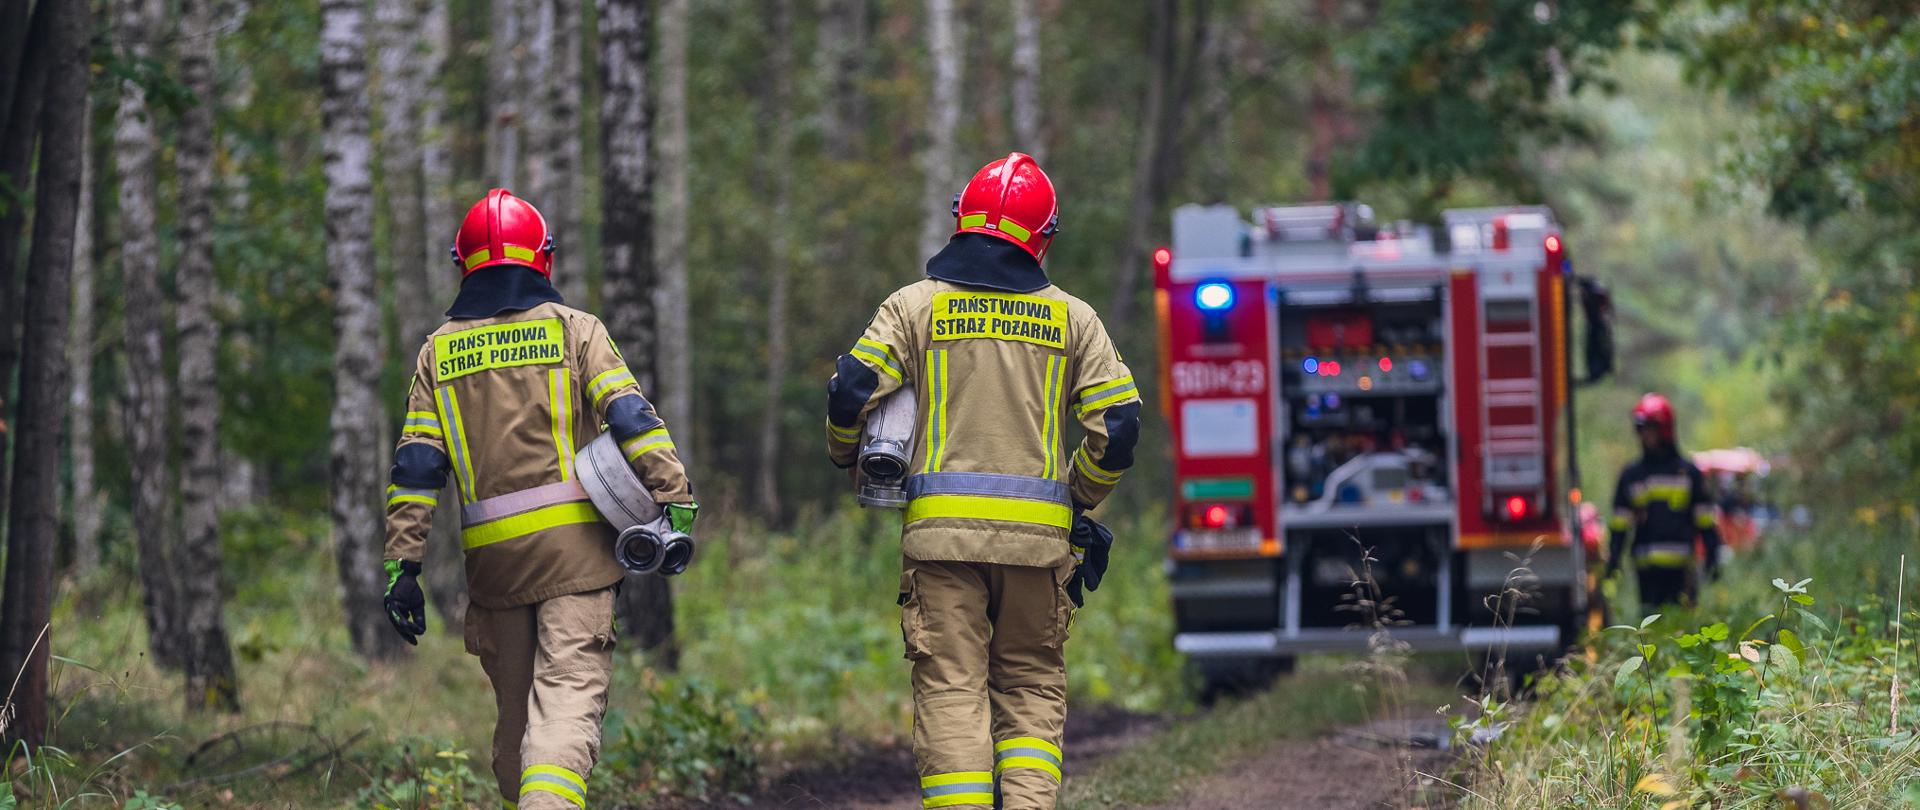 Na zdjęciu widoczny jest las. Drogą idą strażacy w ubraniach specjalnych, niosą węże pożarnicze. W tle czerwony samochód gaśniczy.